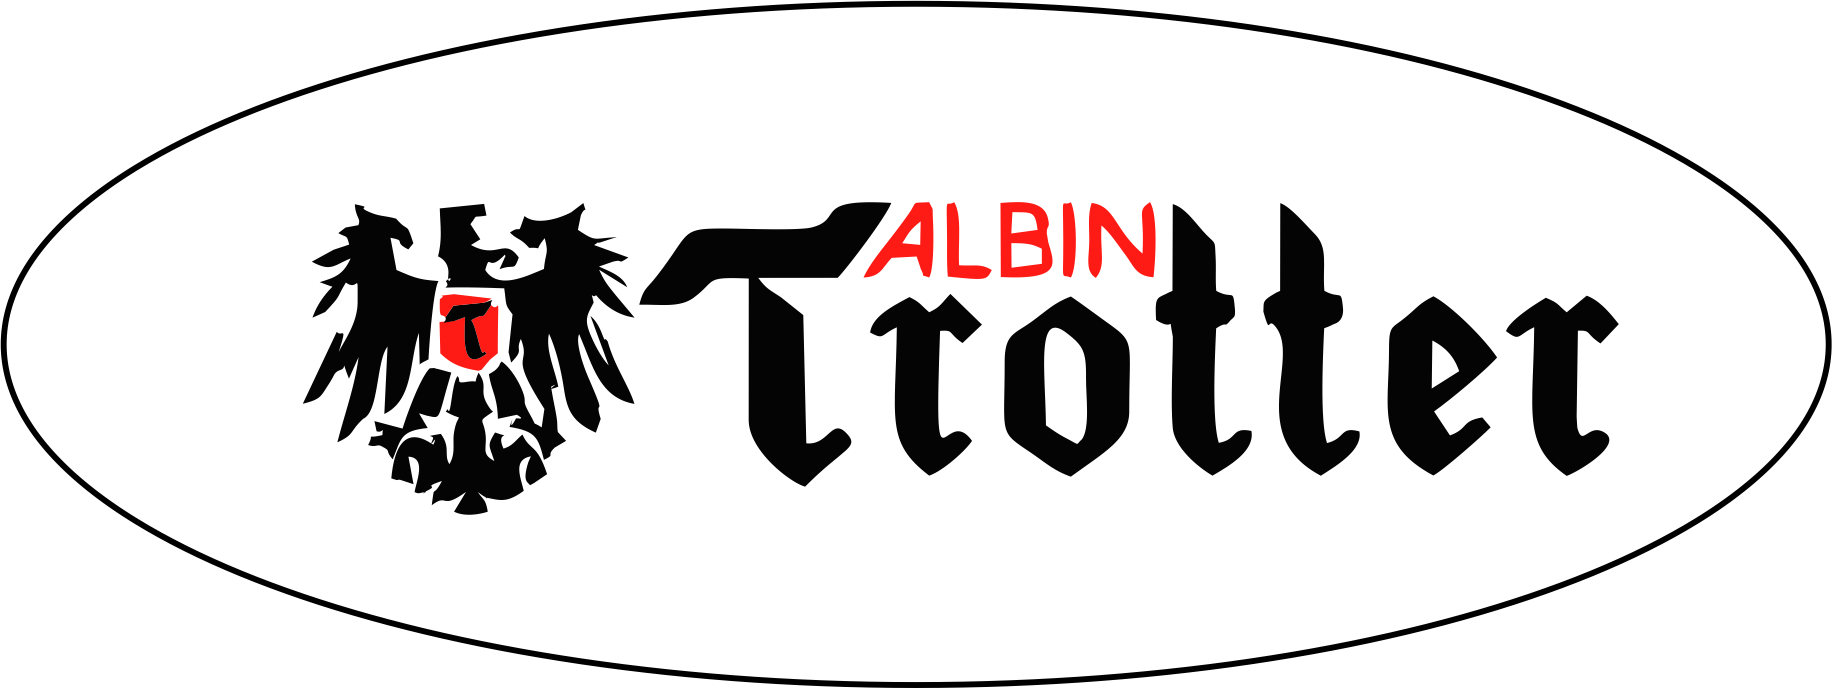 White Solutions - Albin Trotter Logo